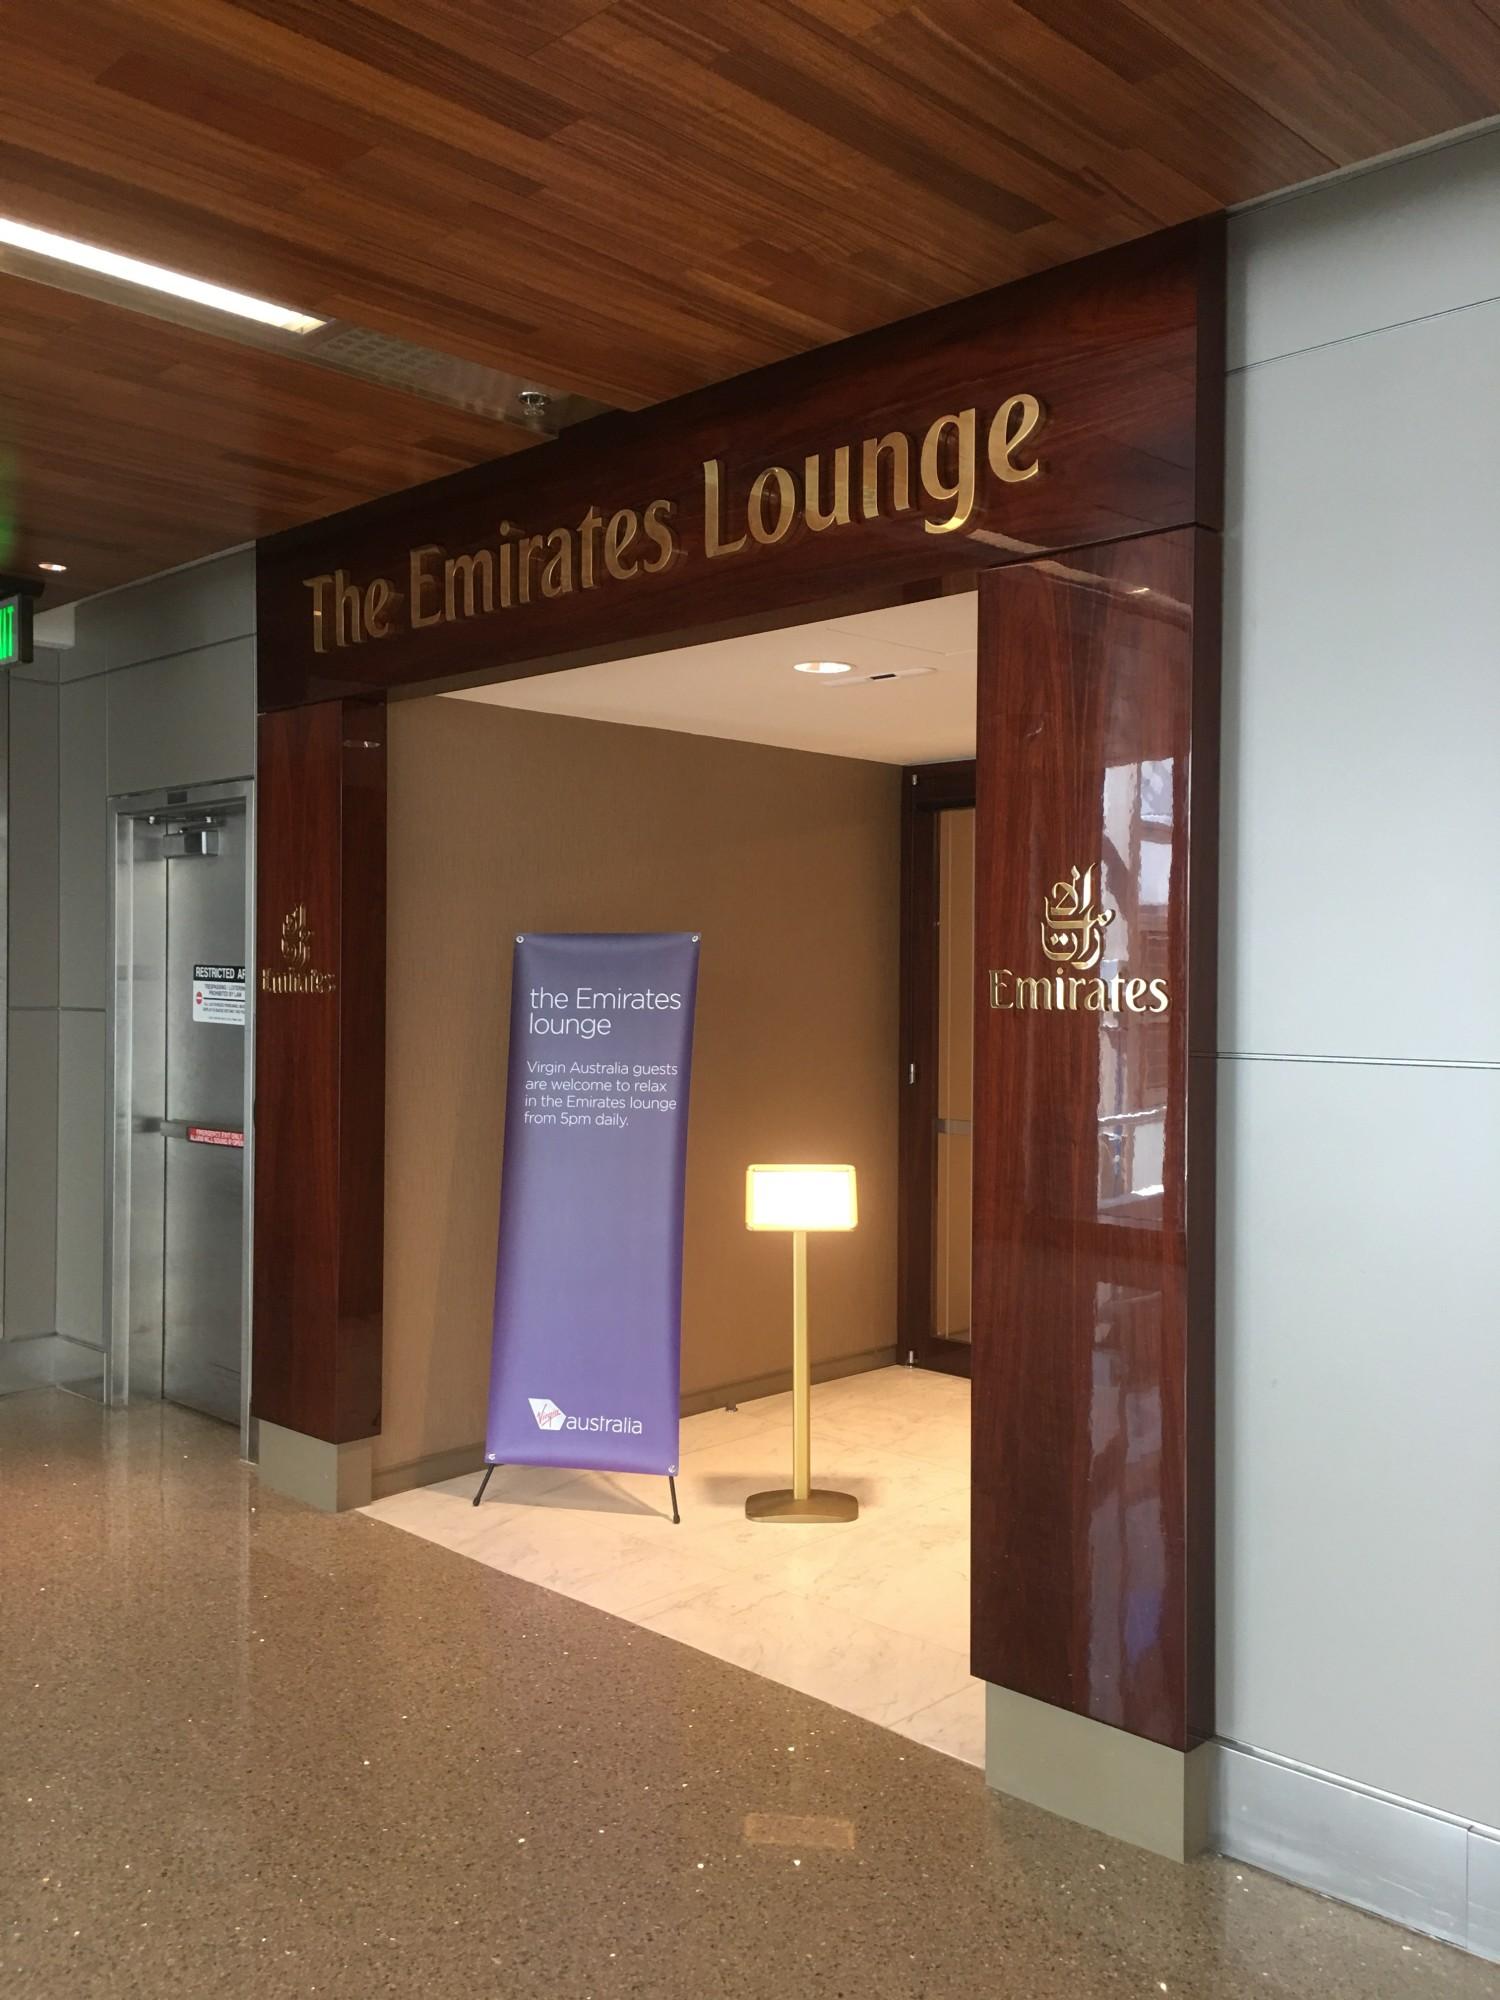 The Emirates Lounge image 8 of 12